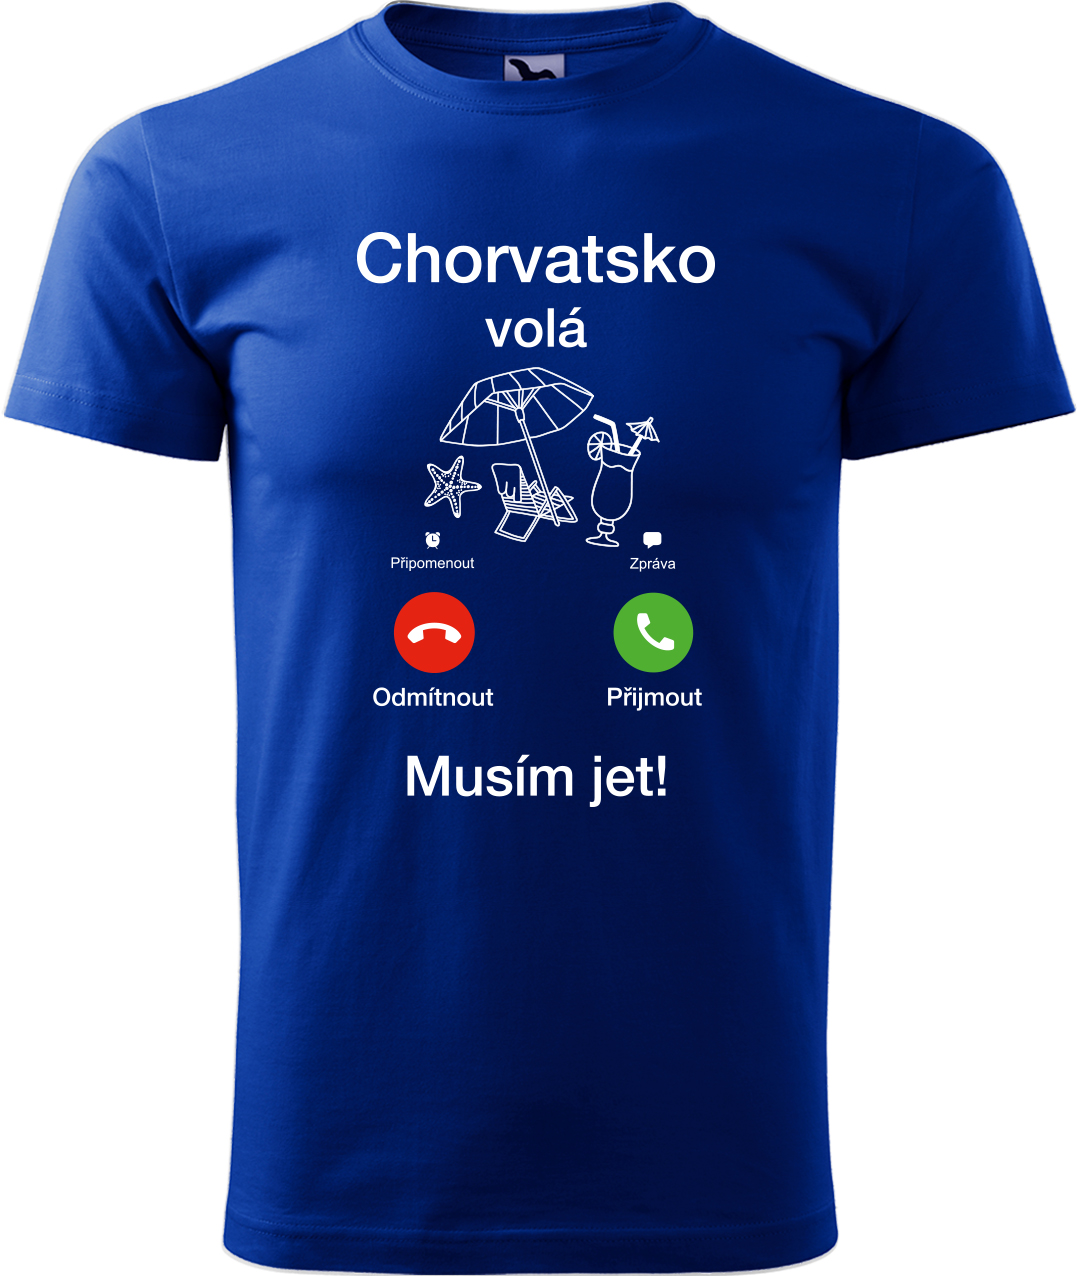 Pánské cestovatelské tričko - Chorvatsko volá - musím jet! Velikost: XL, Barva: Královská modrá (05), Střih: pánský